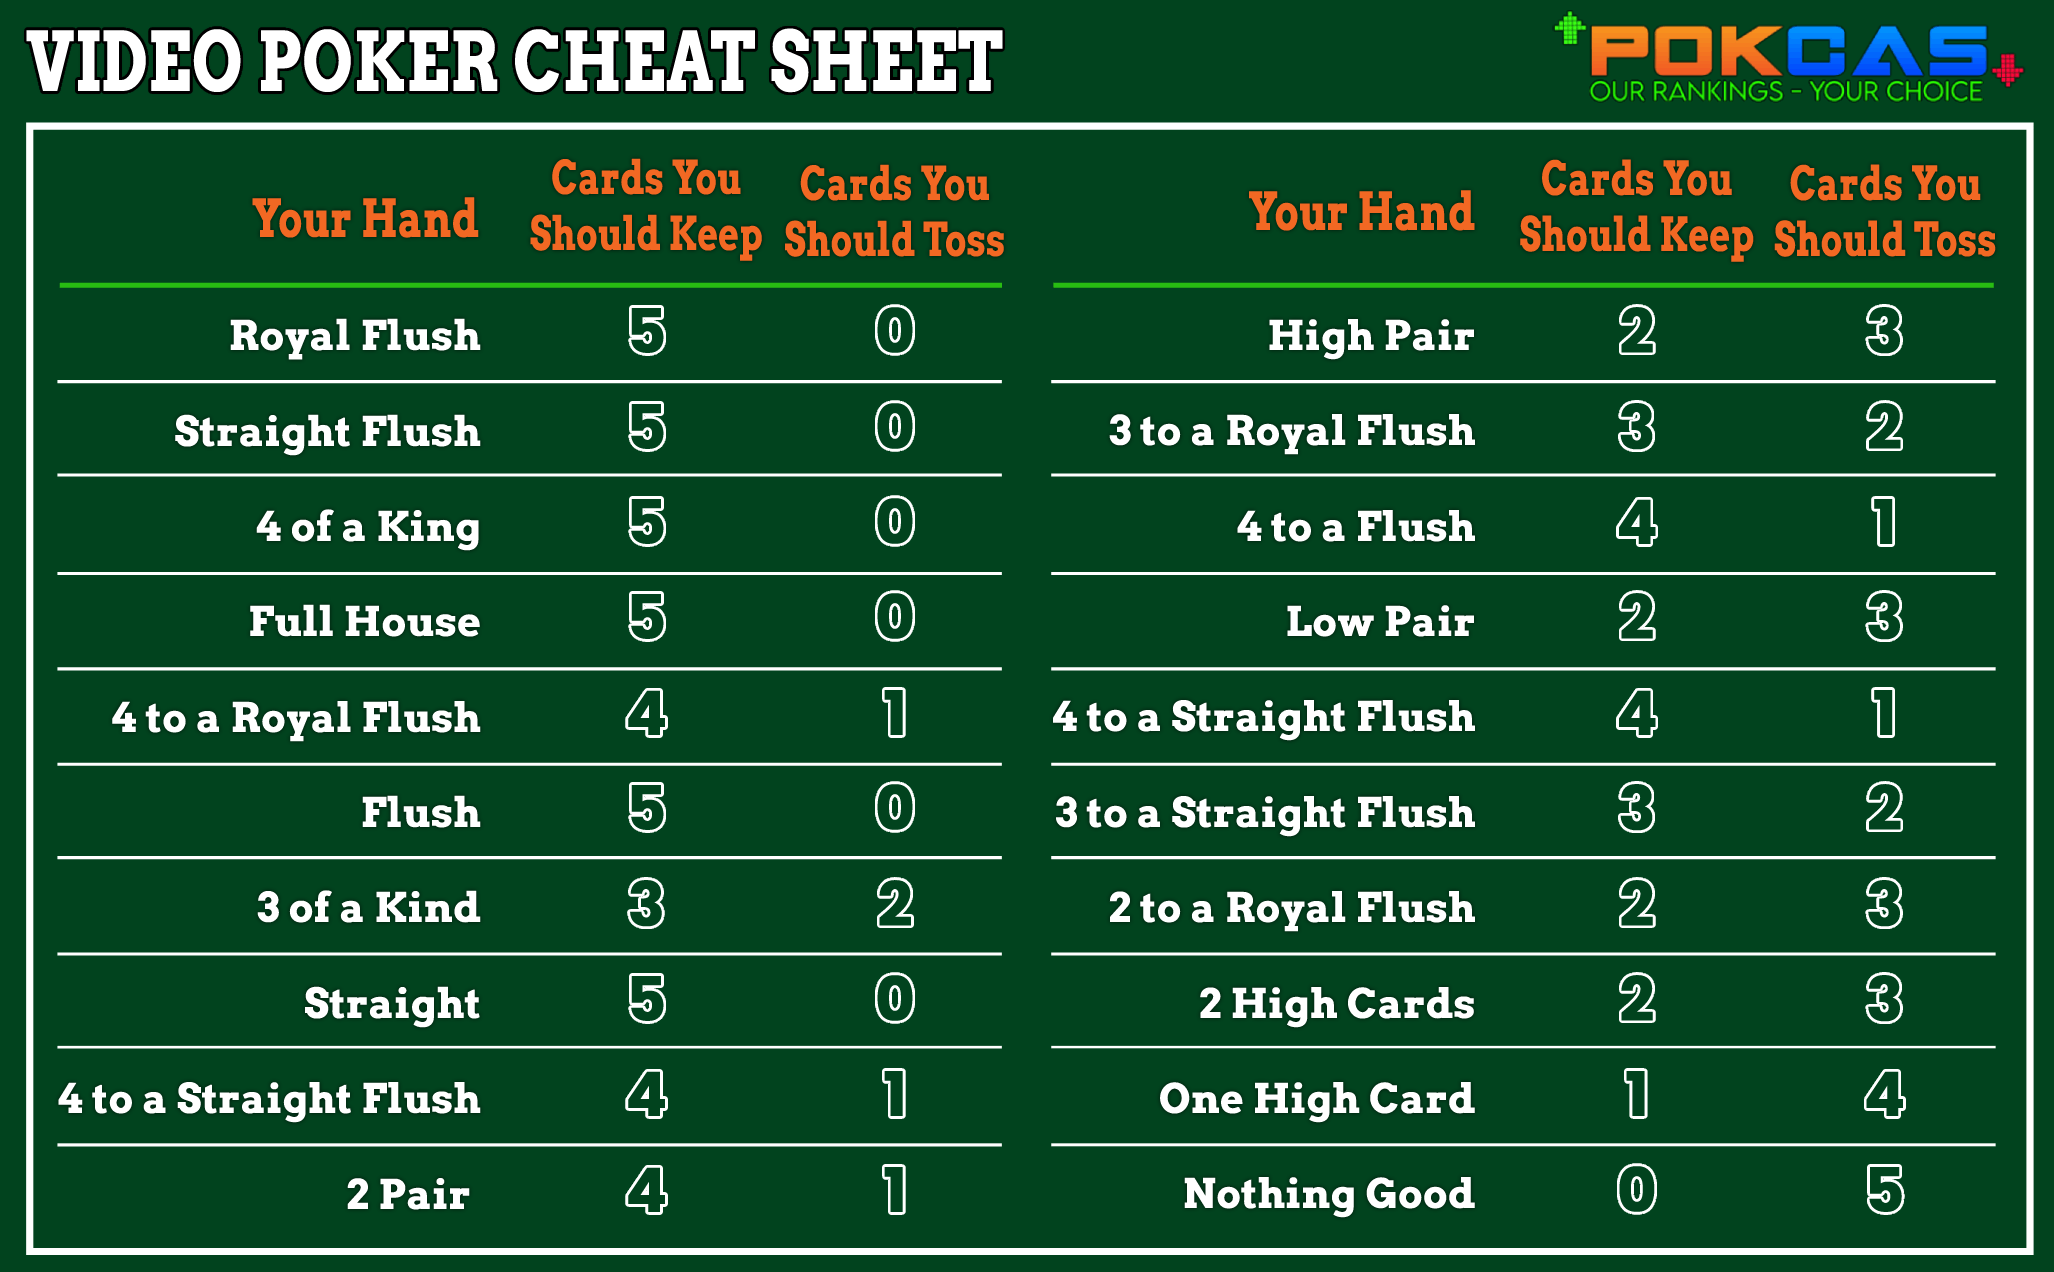 Jacks or Better Video Poker Cheat Sheet